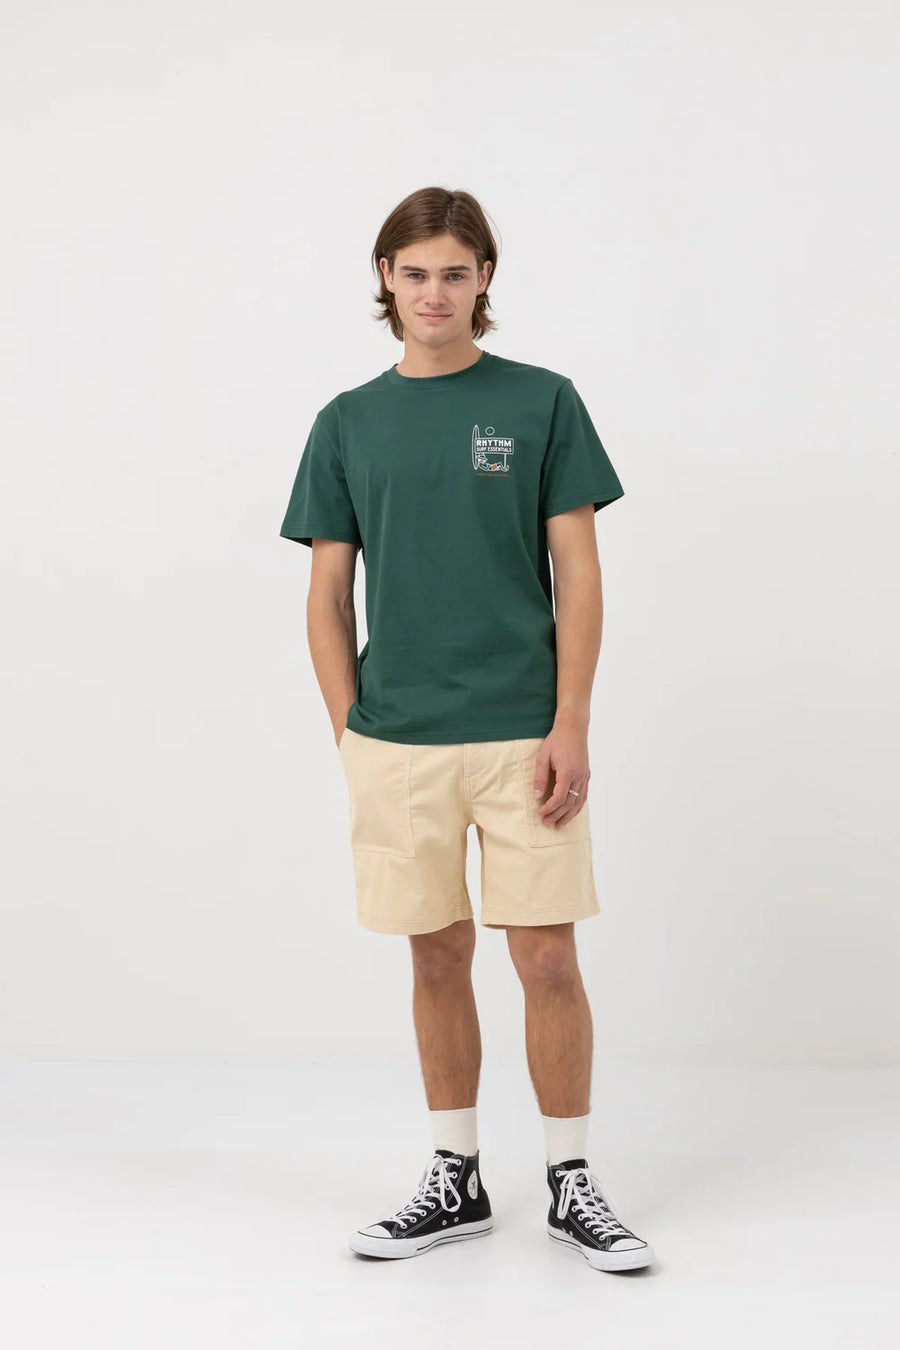 Wanderer Ss T-Shirt -Green